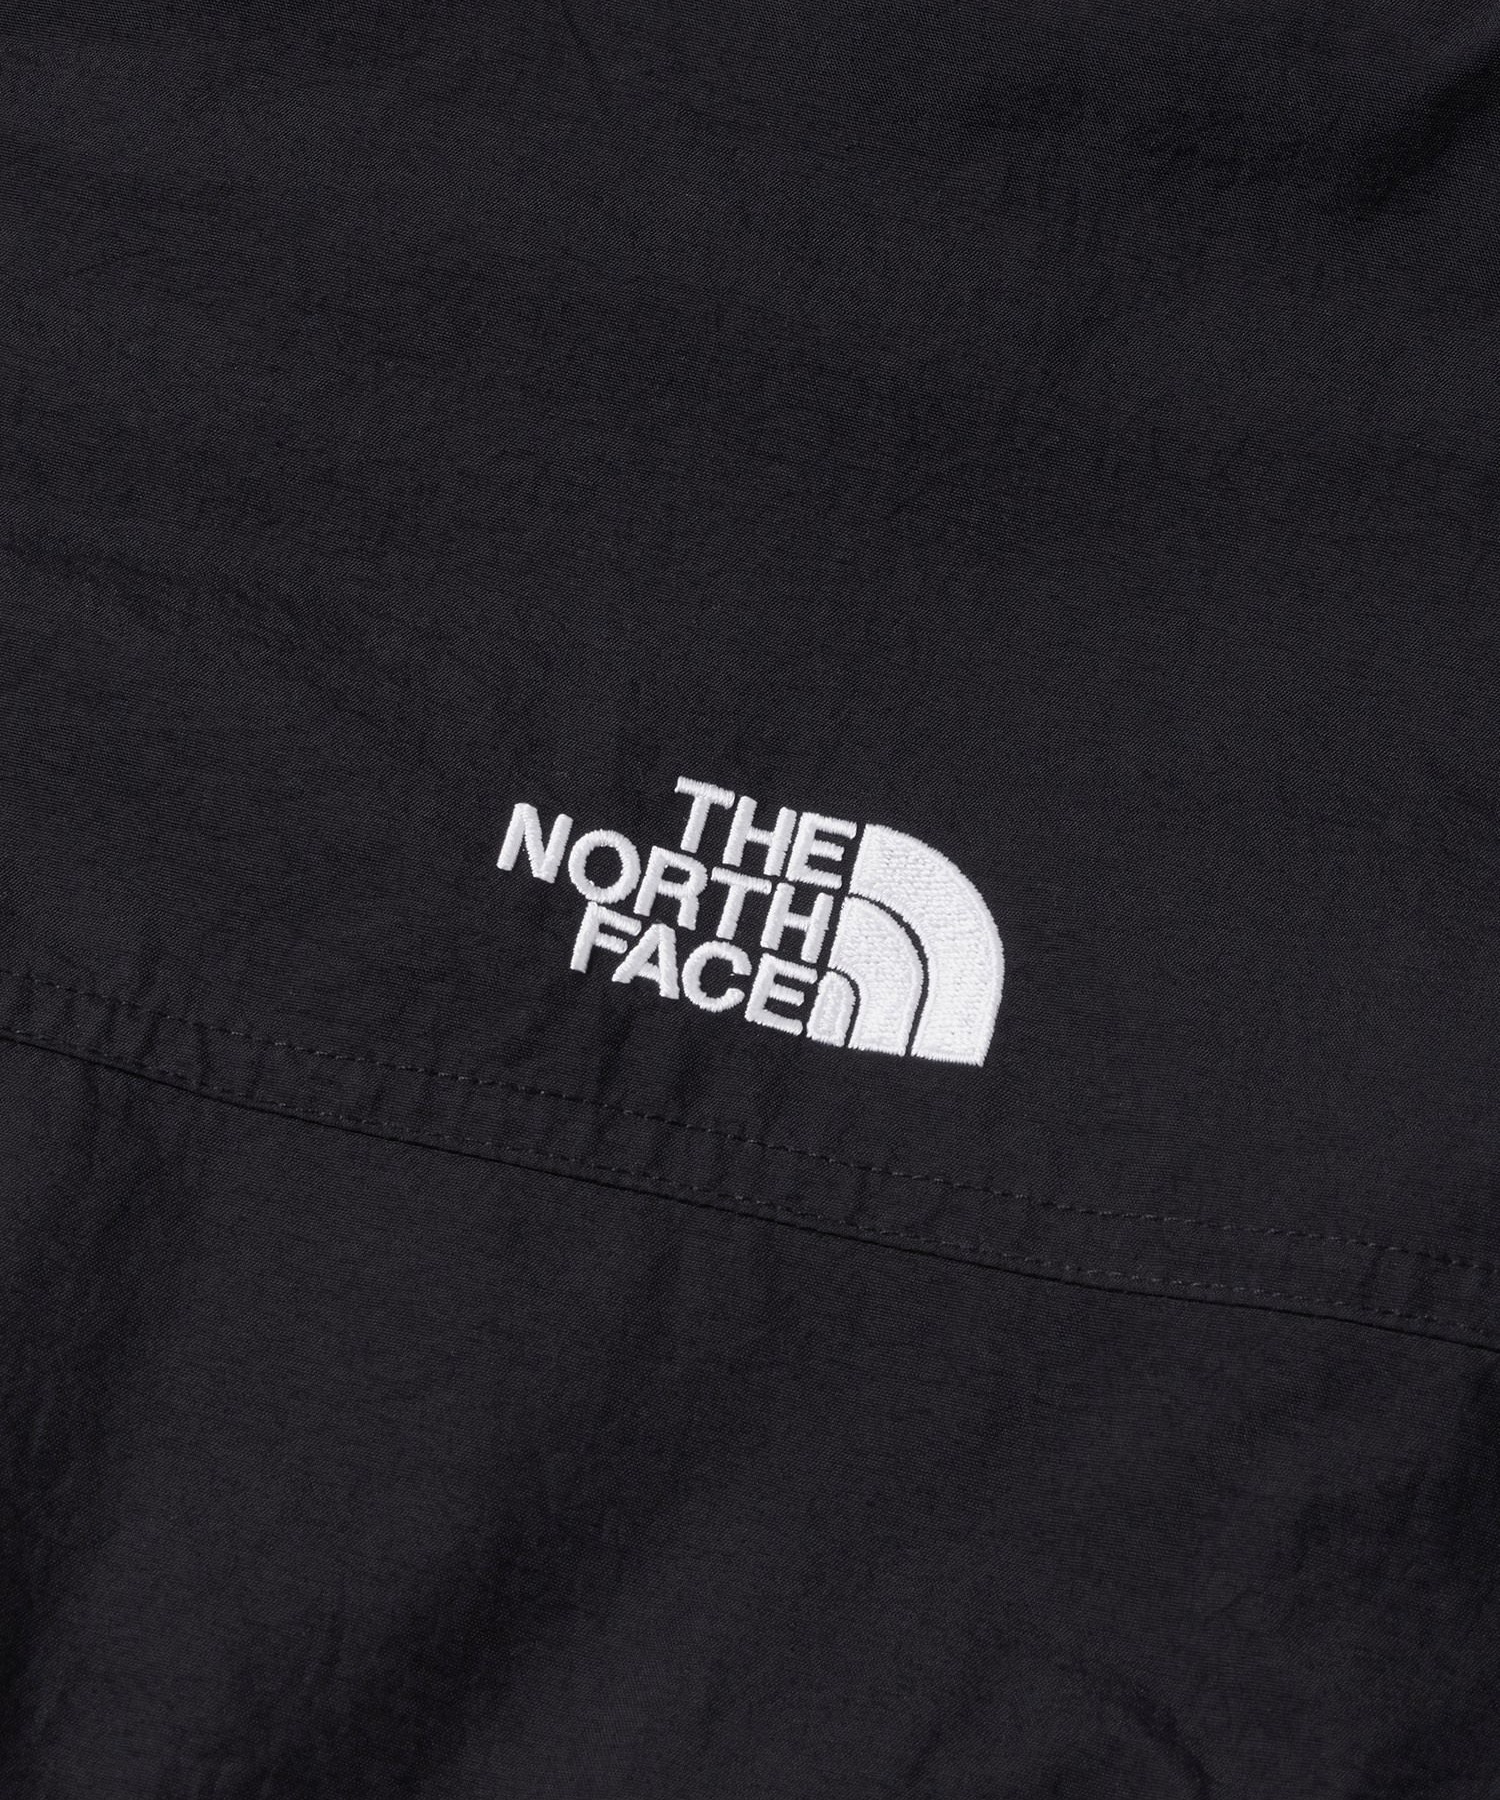 THE NORTH FACE/ザ・ノース・フェイス Compact Nomad Blouson コンパクトノマドブルゾン メンズ ジャケット 撥水 防風 NP72331(KK-S)